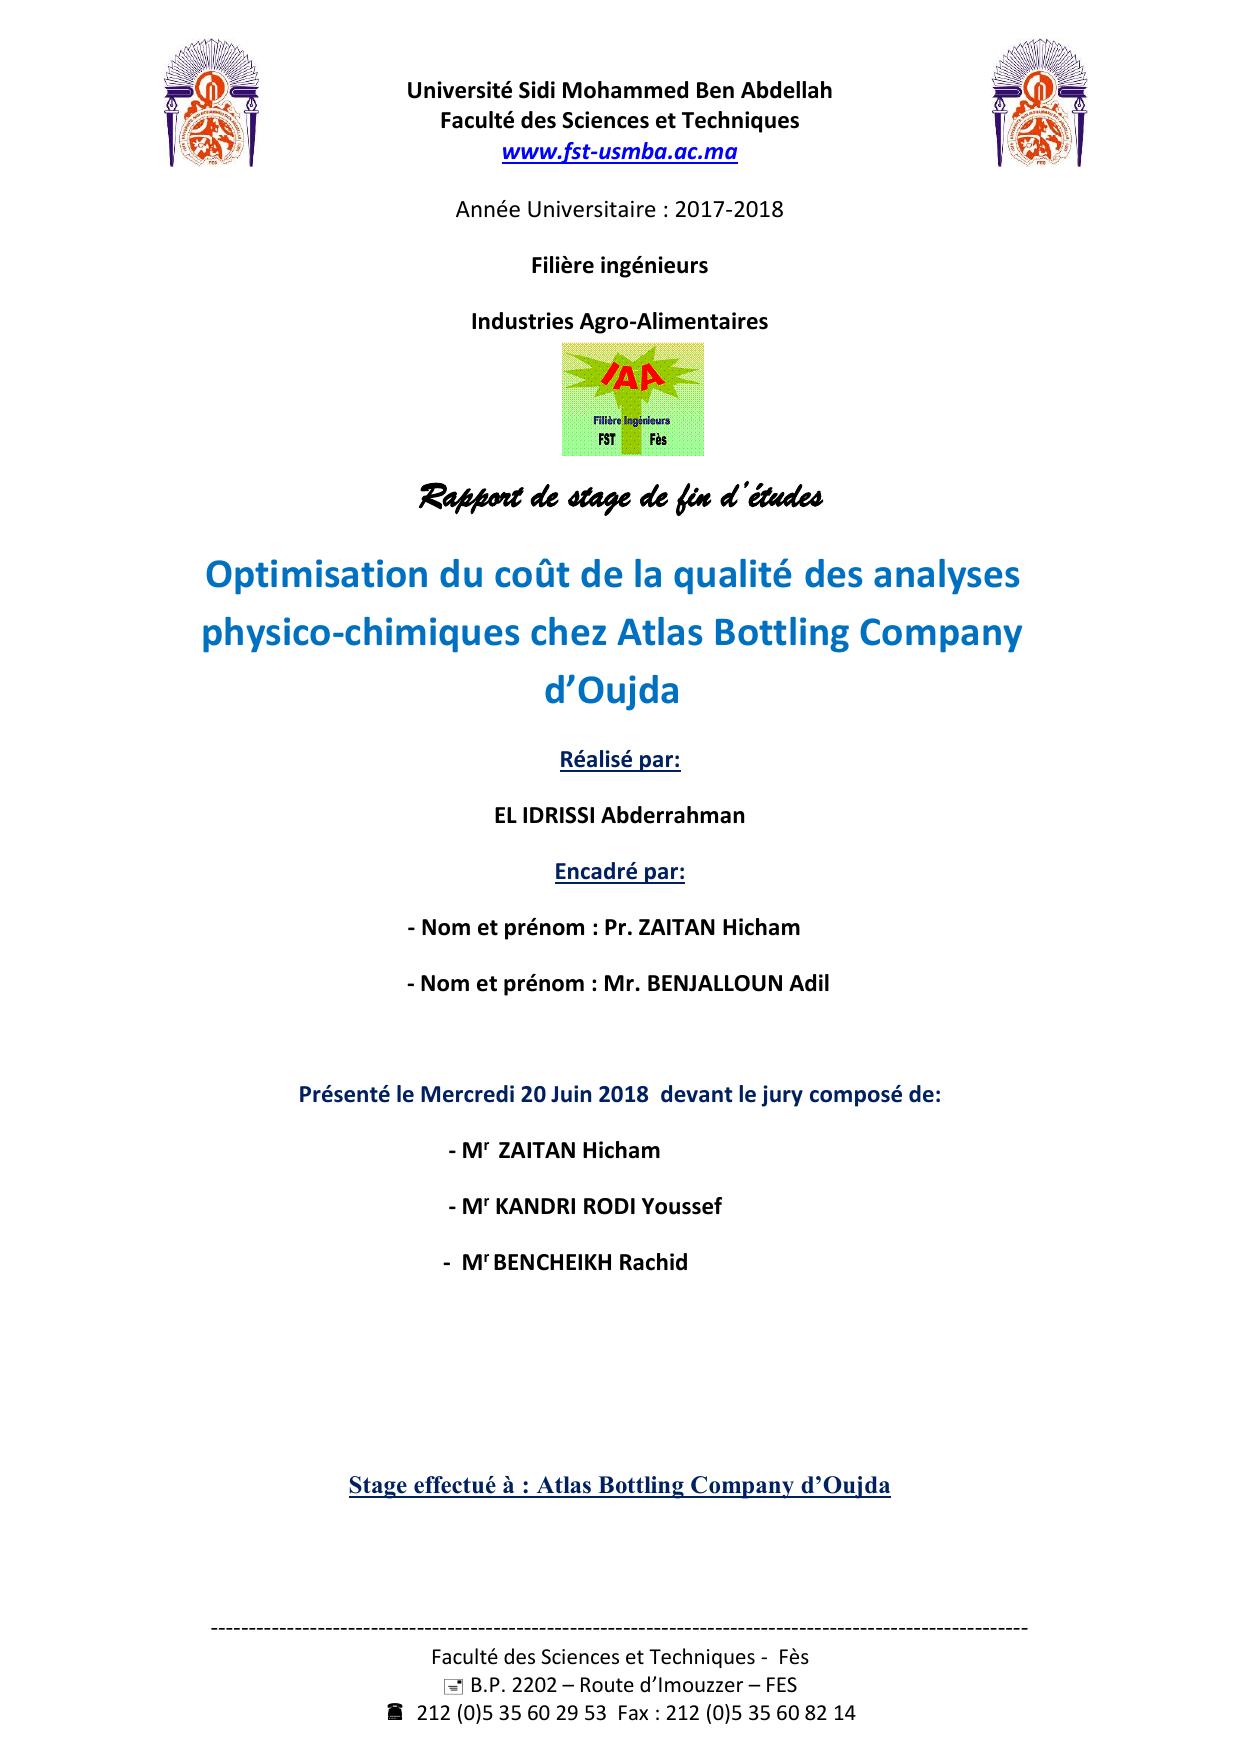 Optimisation du coût de la qualité des analyses physico-chimiques chez Atlas Bottling Company d’Oujda